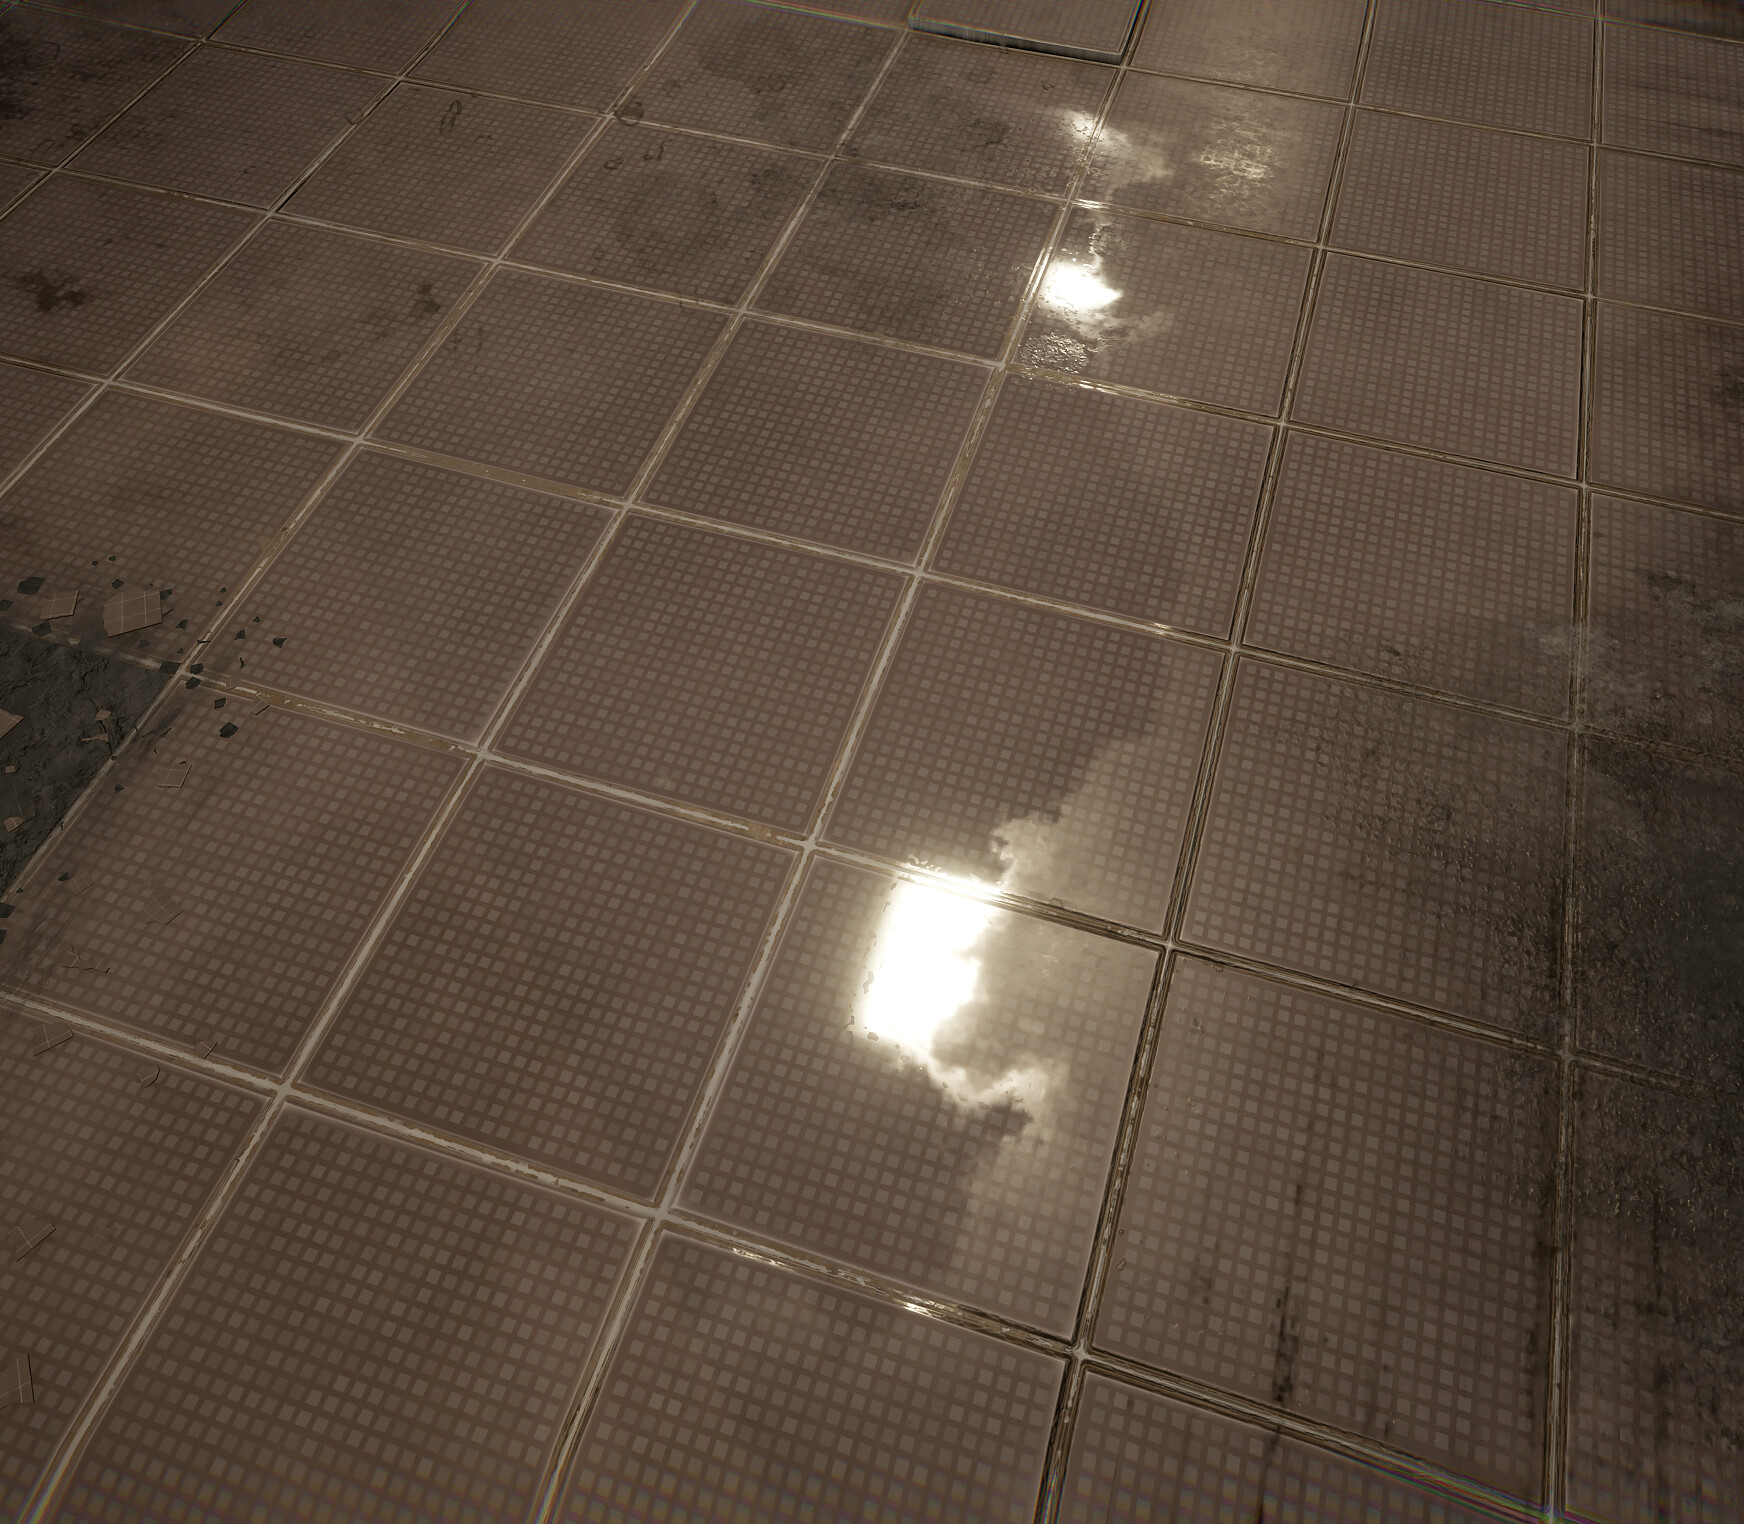 Unreal Engine 5 Oyun Motoru PS5 Teknoloji Demosu ile Birlikte Duyuruldu